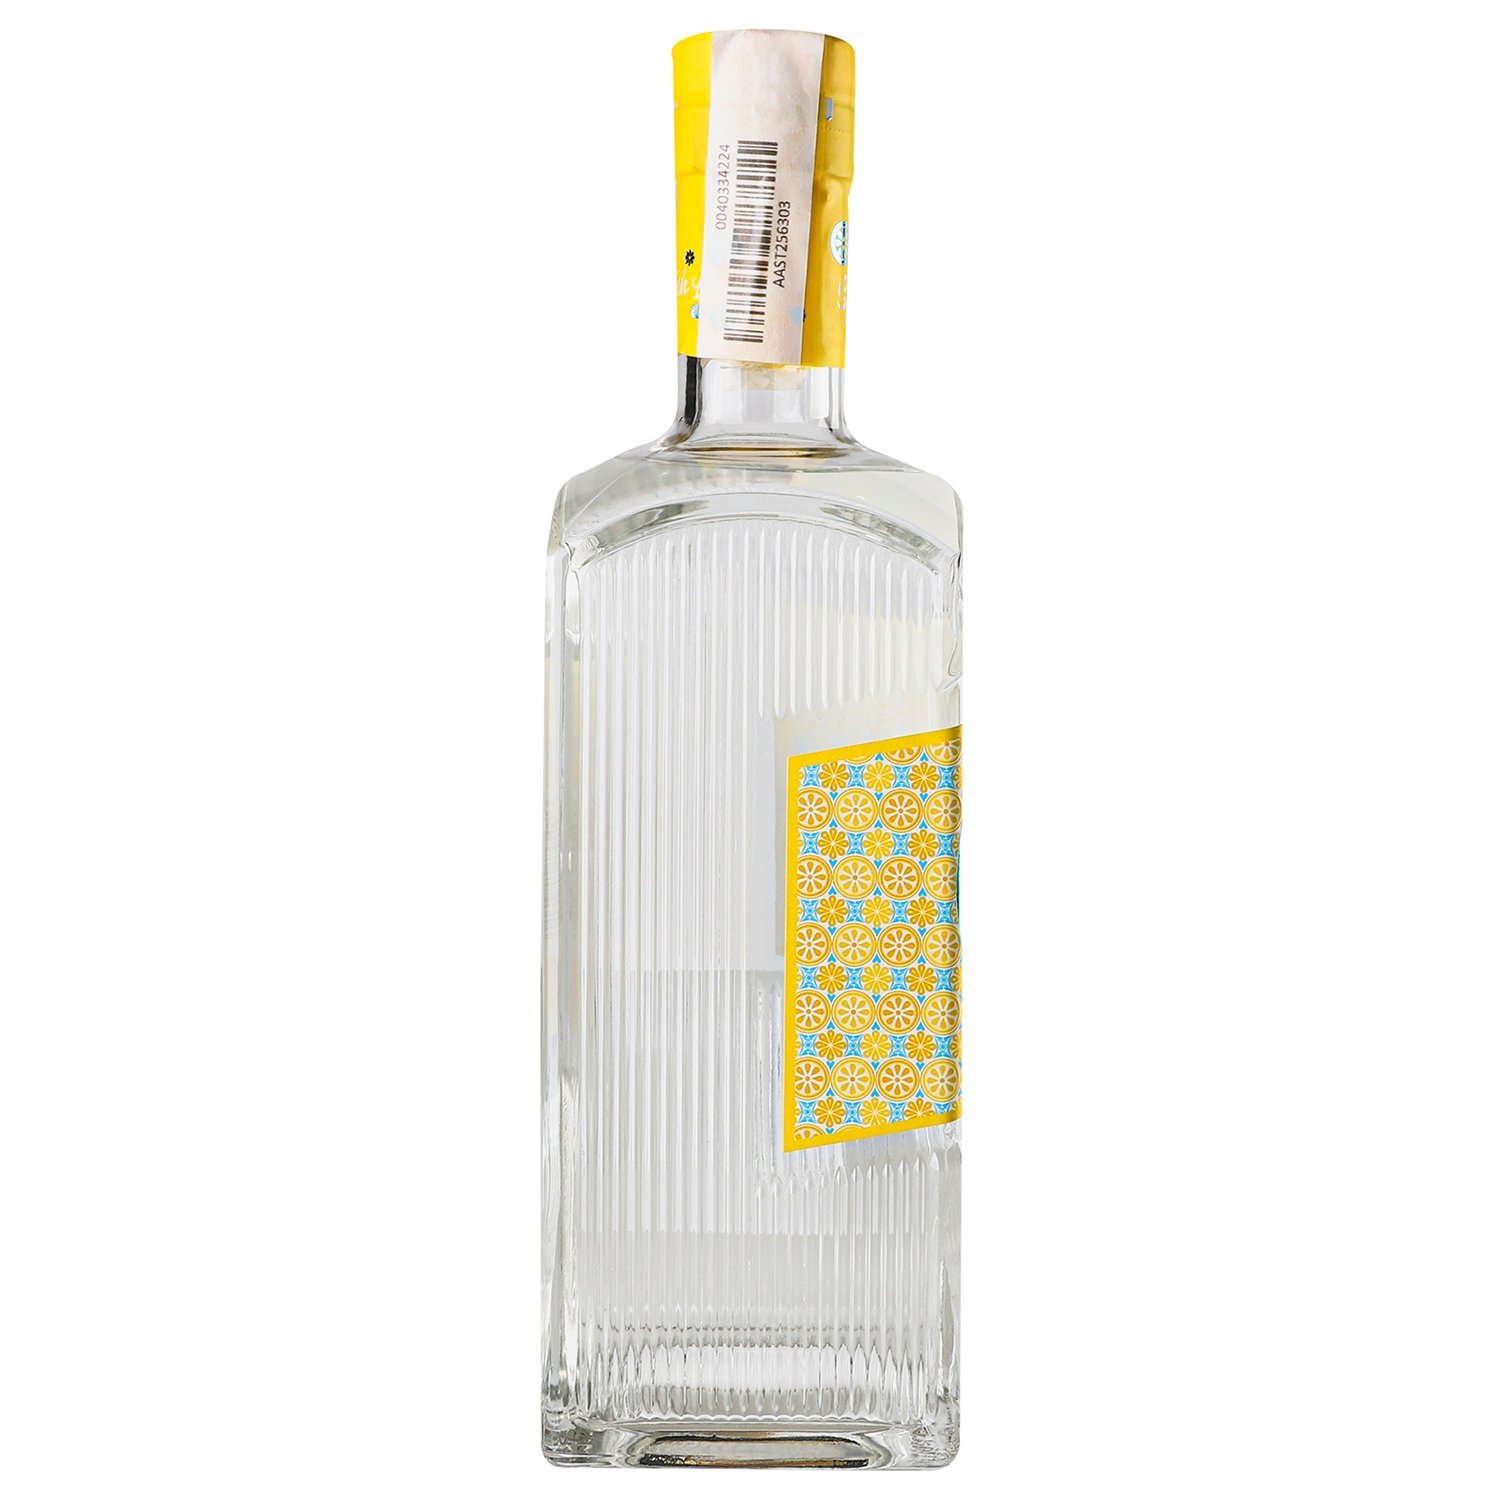 Джин Verano Spanish Lemon, 40 %, 0,7 л (874146) - фото 3